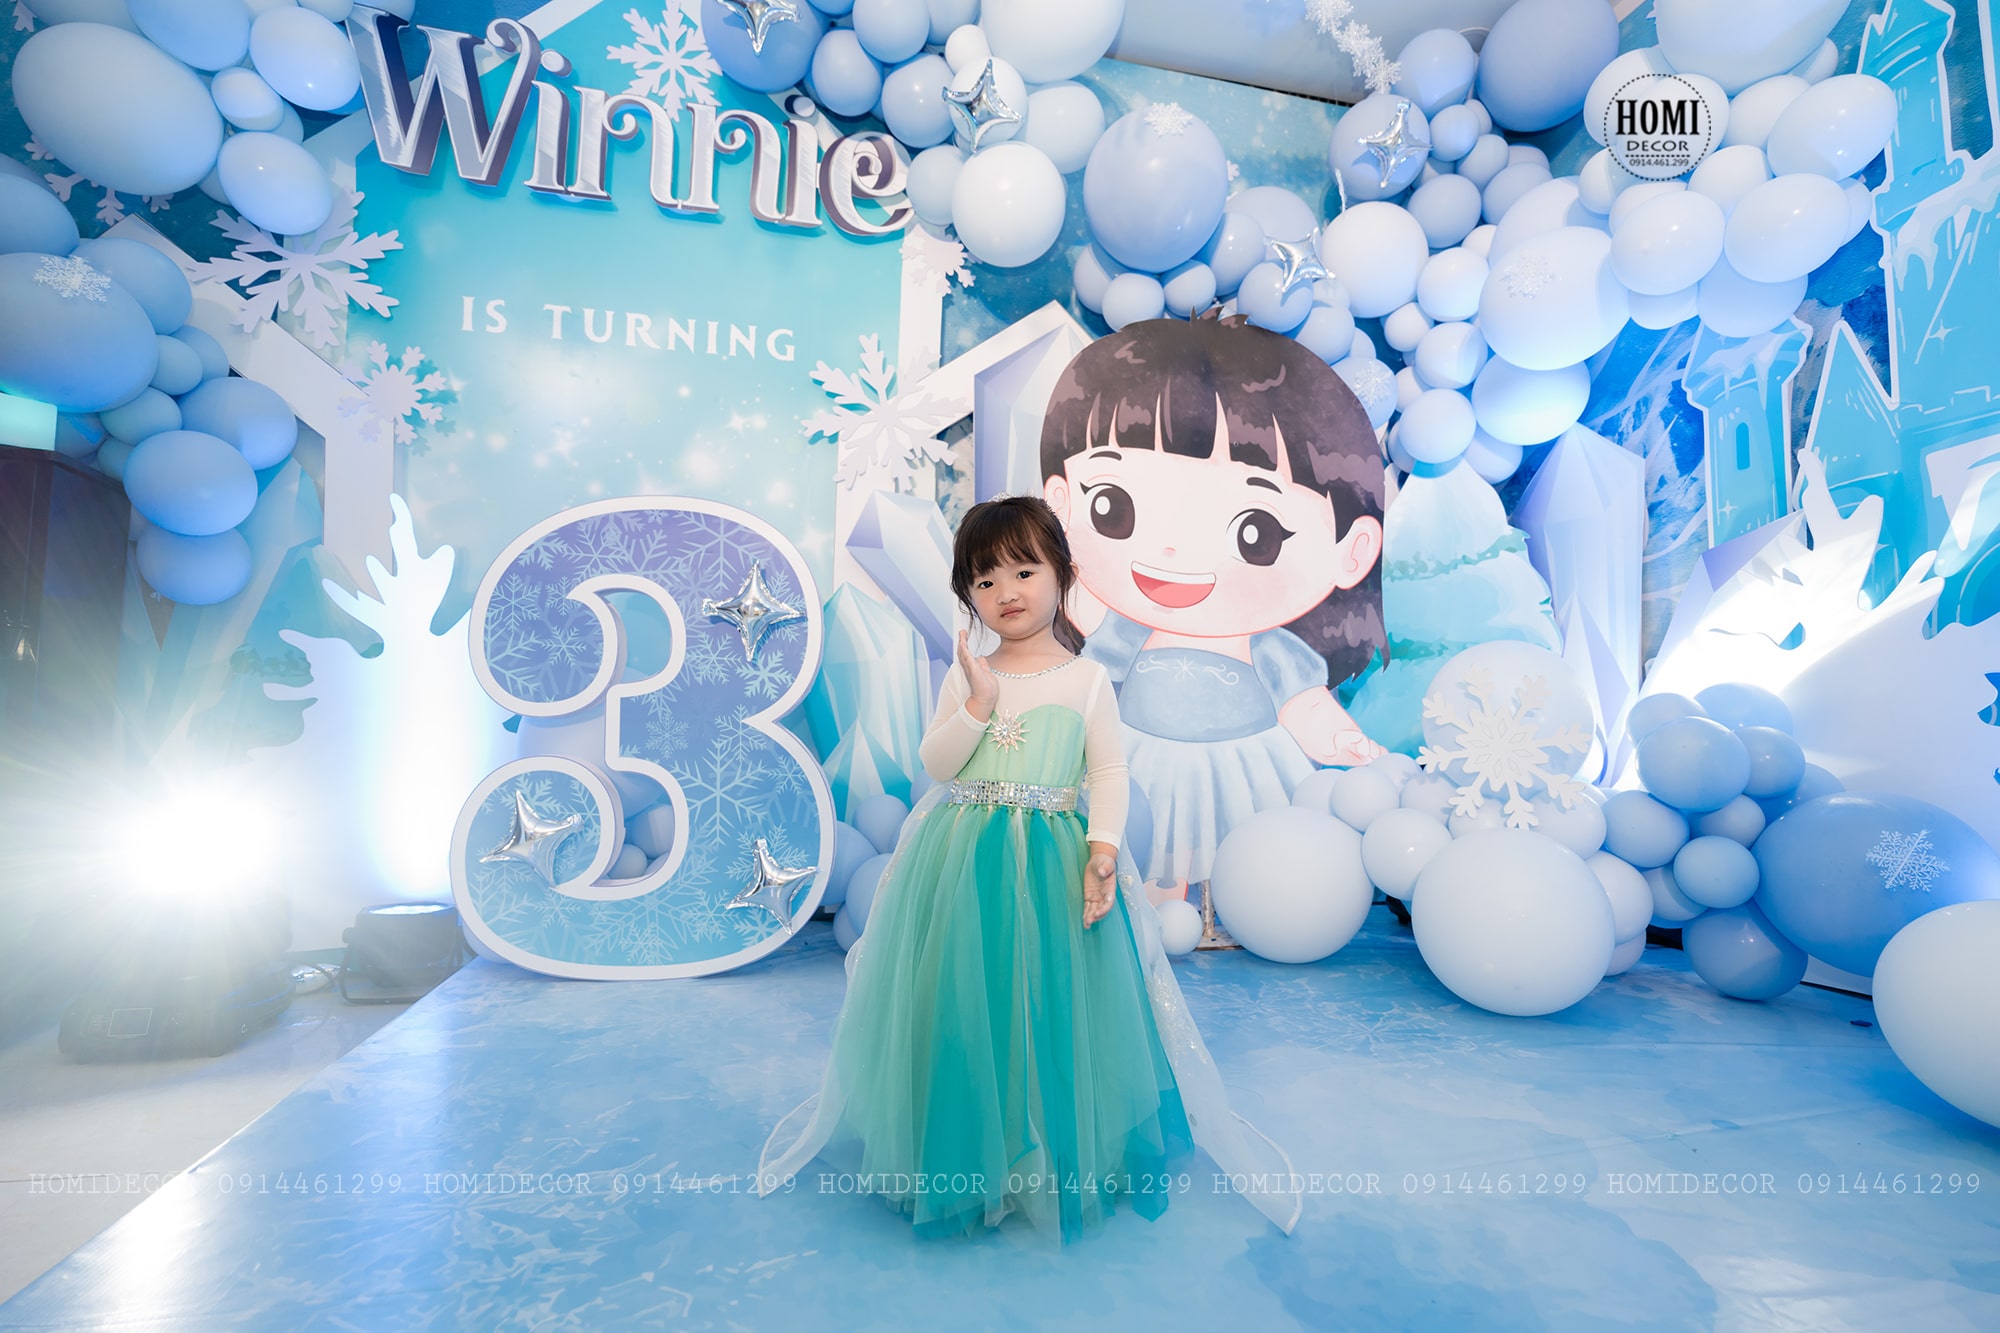 Gia đình ca sĩ Đông Nhi - Ông Cao Thắng tổ chức tiệc sinh nhật bé Winnie 3 tuổi theo chủ đề Elsa